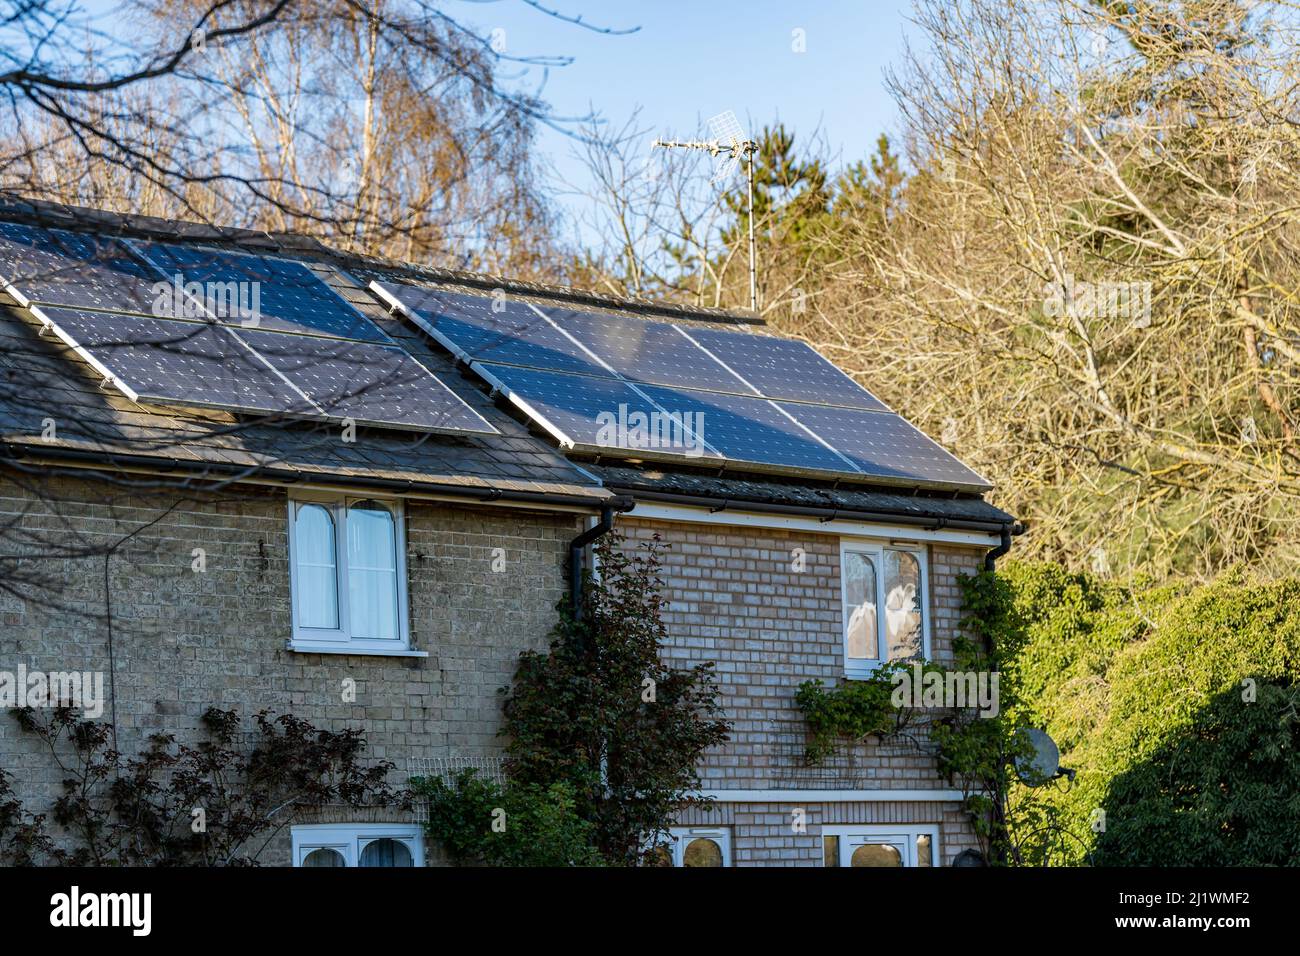 Une maison de campagne qui a eu des panneaux solaires installés sur le toit pour produire de l'énergie verte propre renouvelable et pour lutter contre le coût croissant d'energ Banque D'Images